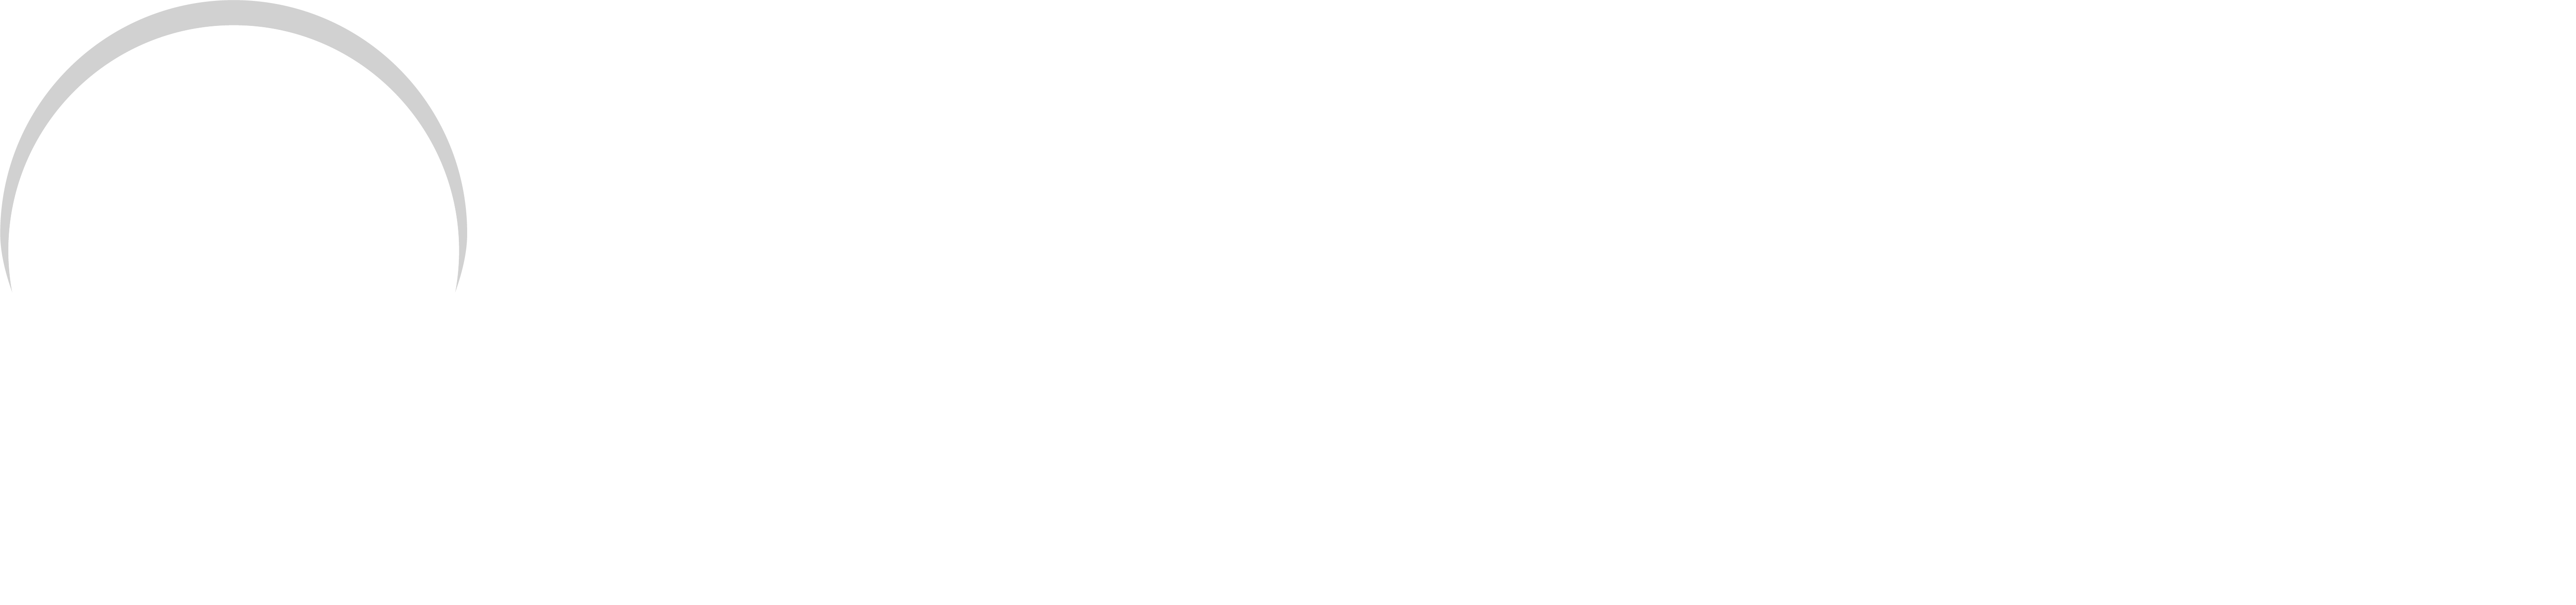 Homedxb.com Real Estate